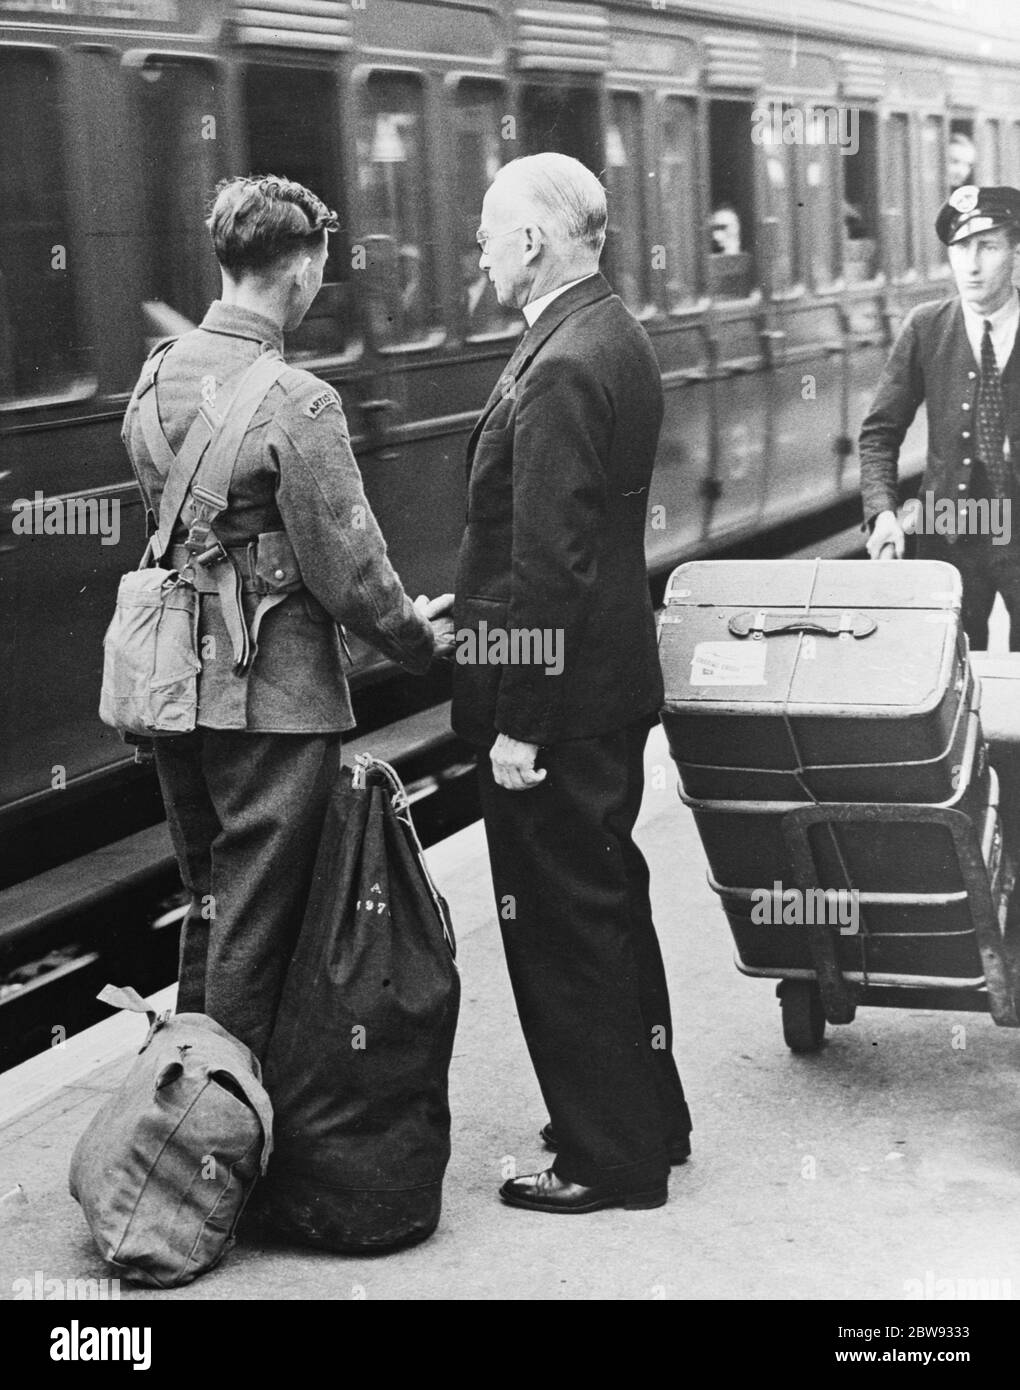 Der Vikar von Sidcup, Reverend J E Coates, sieht seinen Sohn, ein Freiwilliger in den Artists Gewehre, an dem Tag, dass der Krieg erklärt wurde. September 1939 Stockfoto